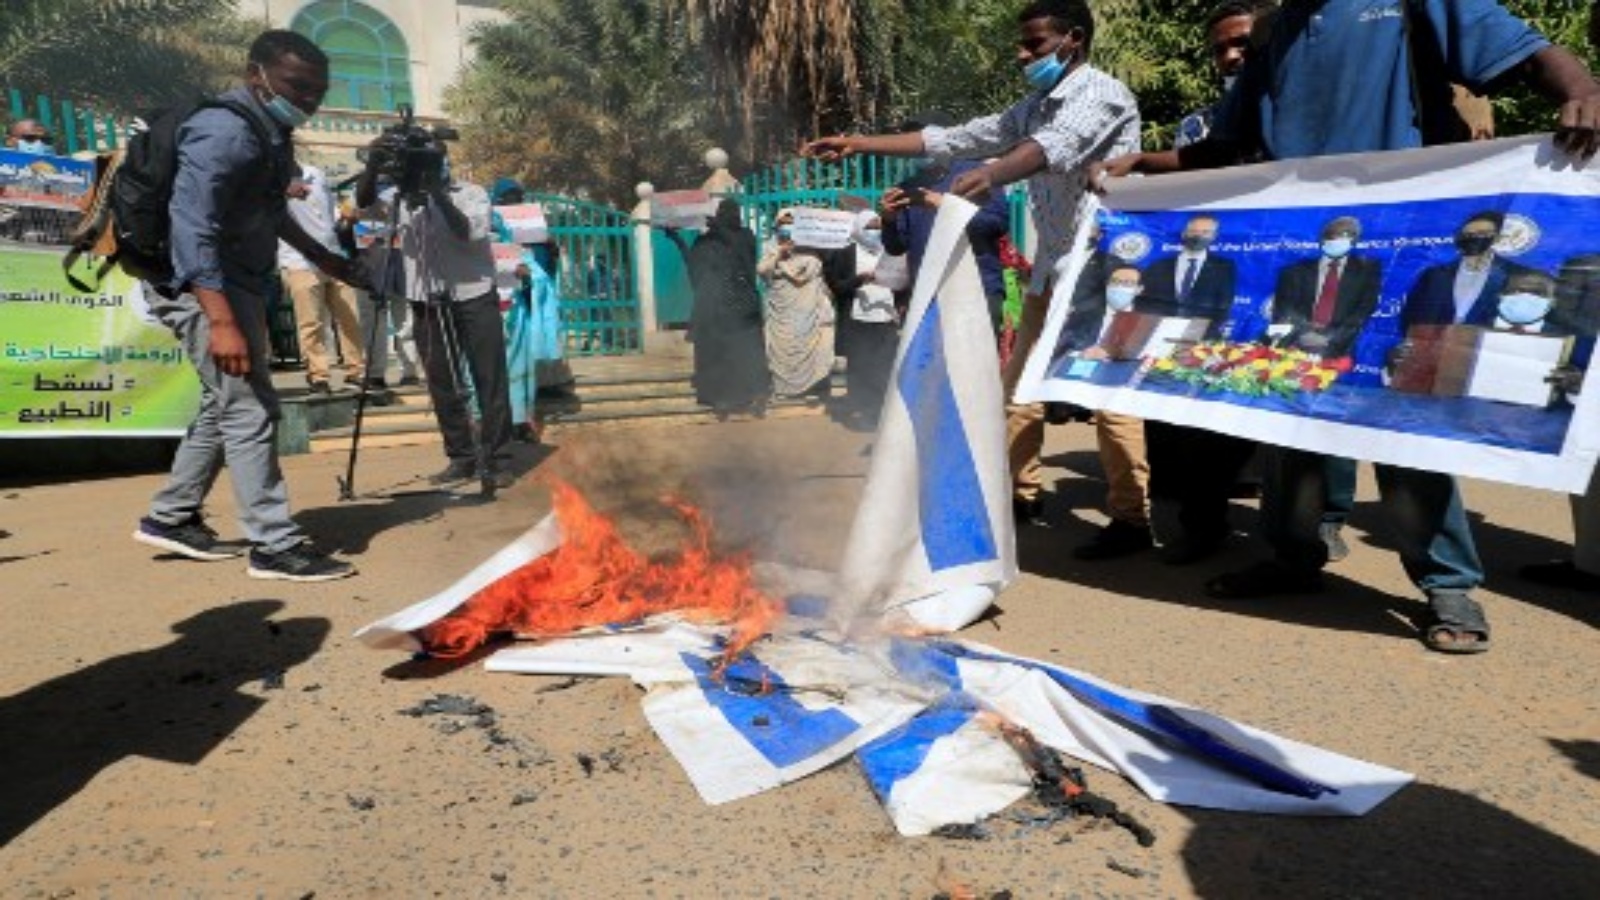 متظاهرون سودانيون يحرقون الأعلام الإسرائيلية خلال مسيرة ضد توقيع بلادهم مؤخرًا على اتفاق لتطبيع العلاقات مع الدولة اليهودية ، خارج مكاتب مجلس الوزراء في العاصمة الخرطوم ، في 17 يناير 2021.